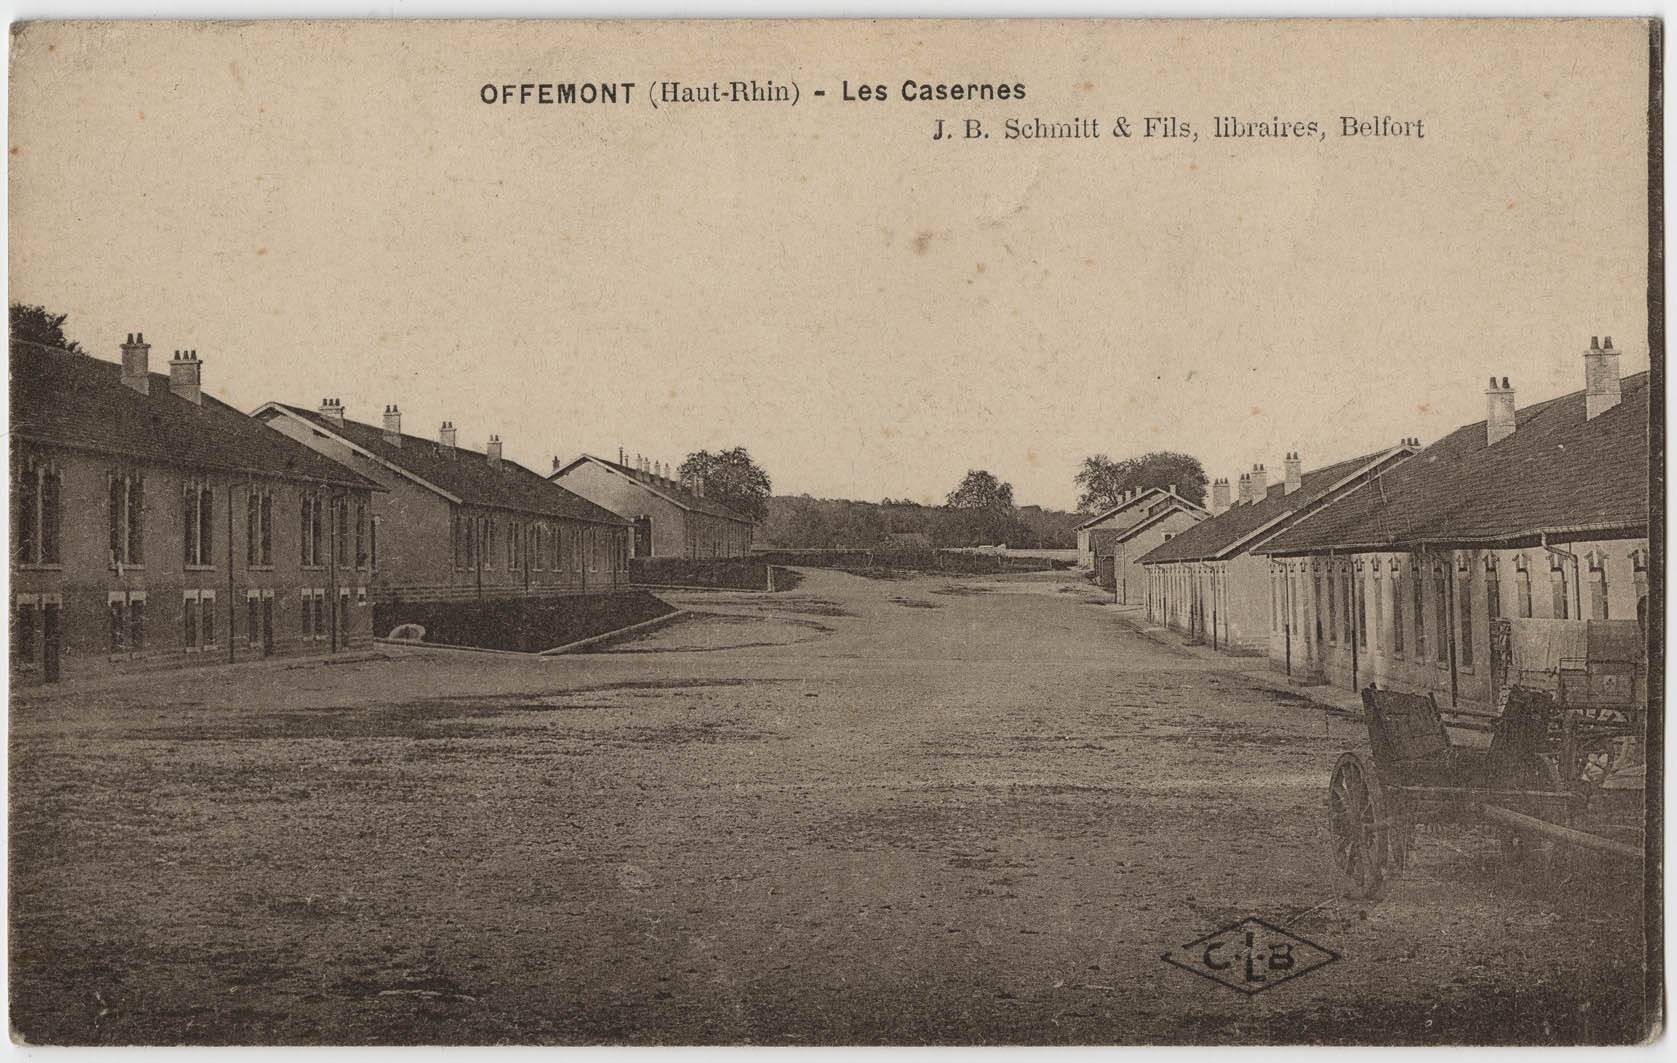 Offemont (Haut-Rhin), les casernes.